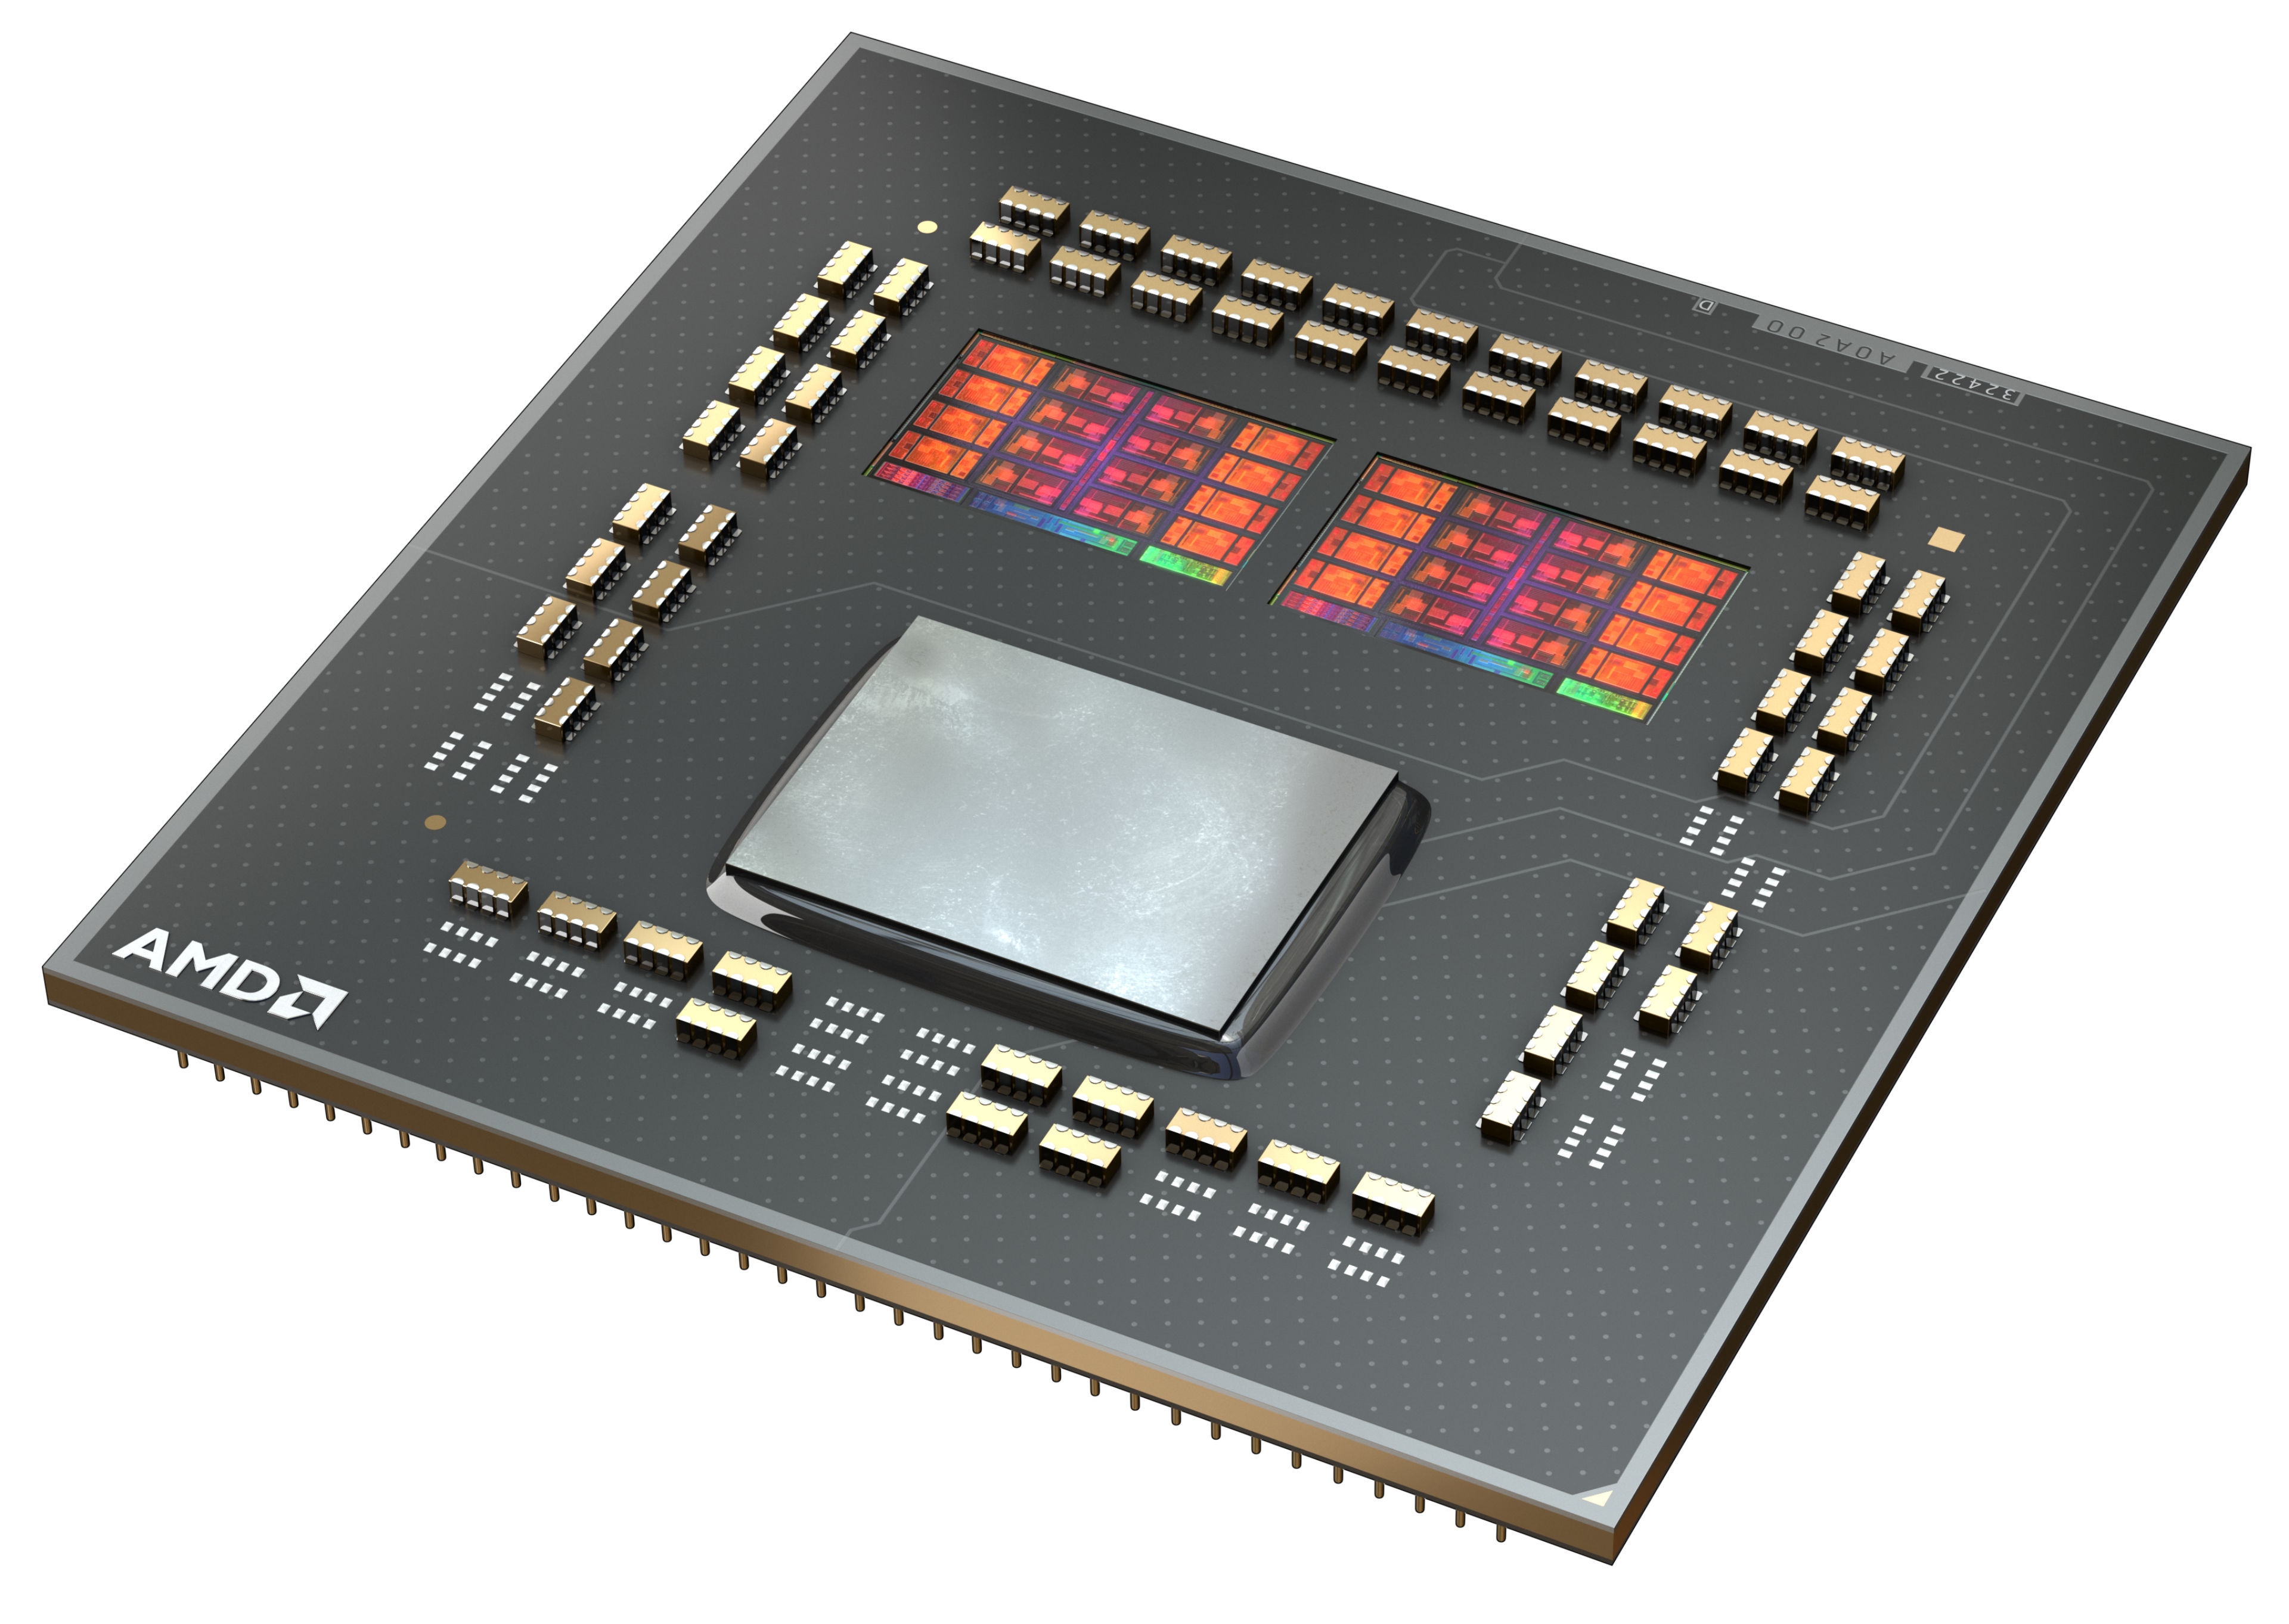 AMD Ryzen 7 5800X3D R7 5800X3D 3.4 GHz 8-Core 16-Thread CPU